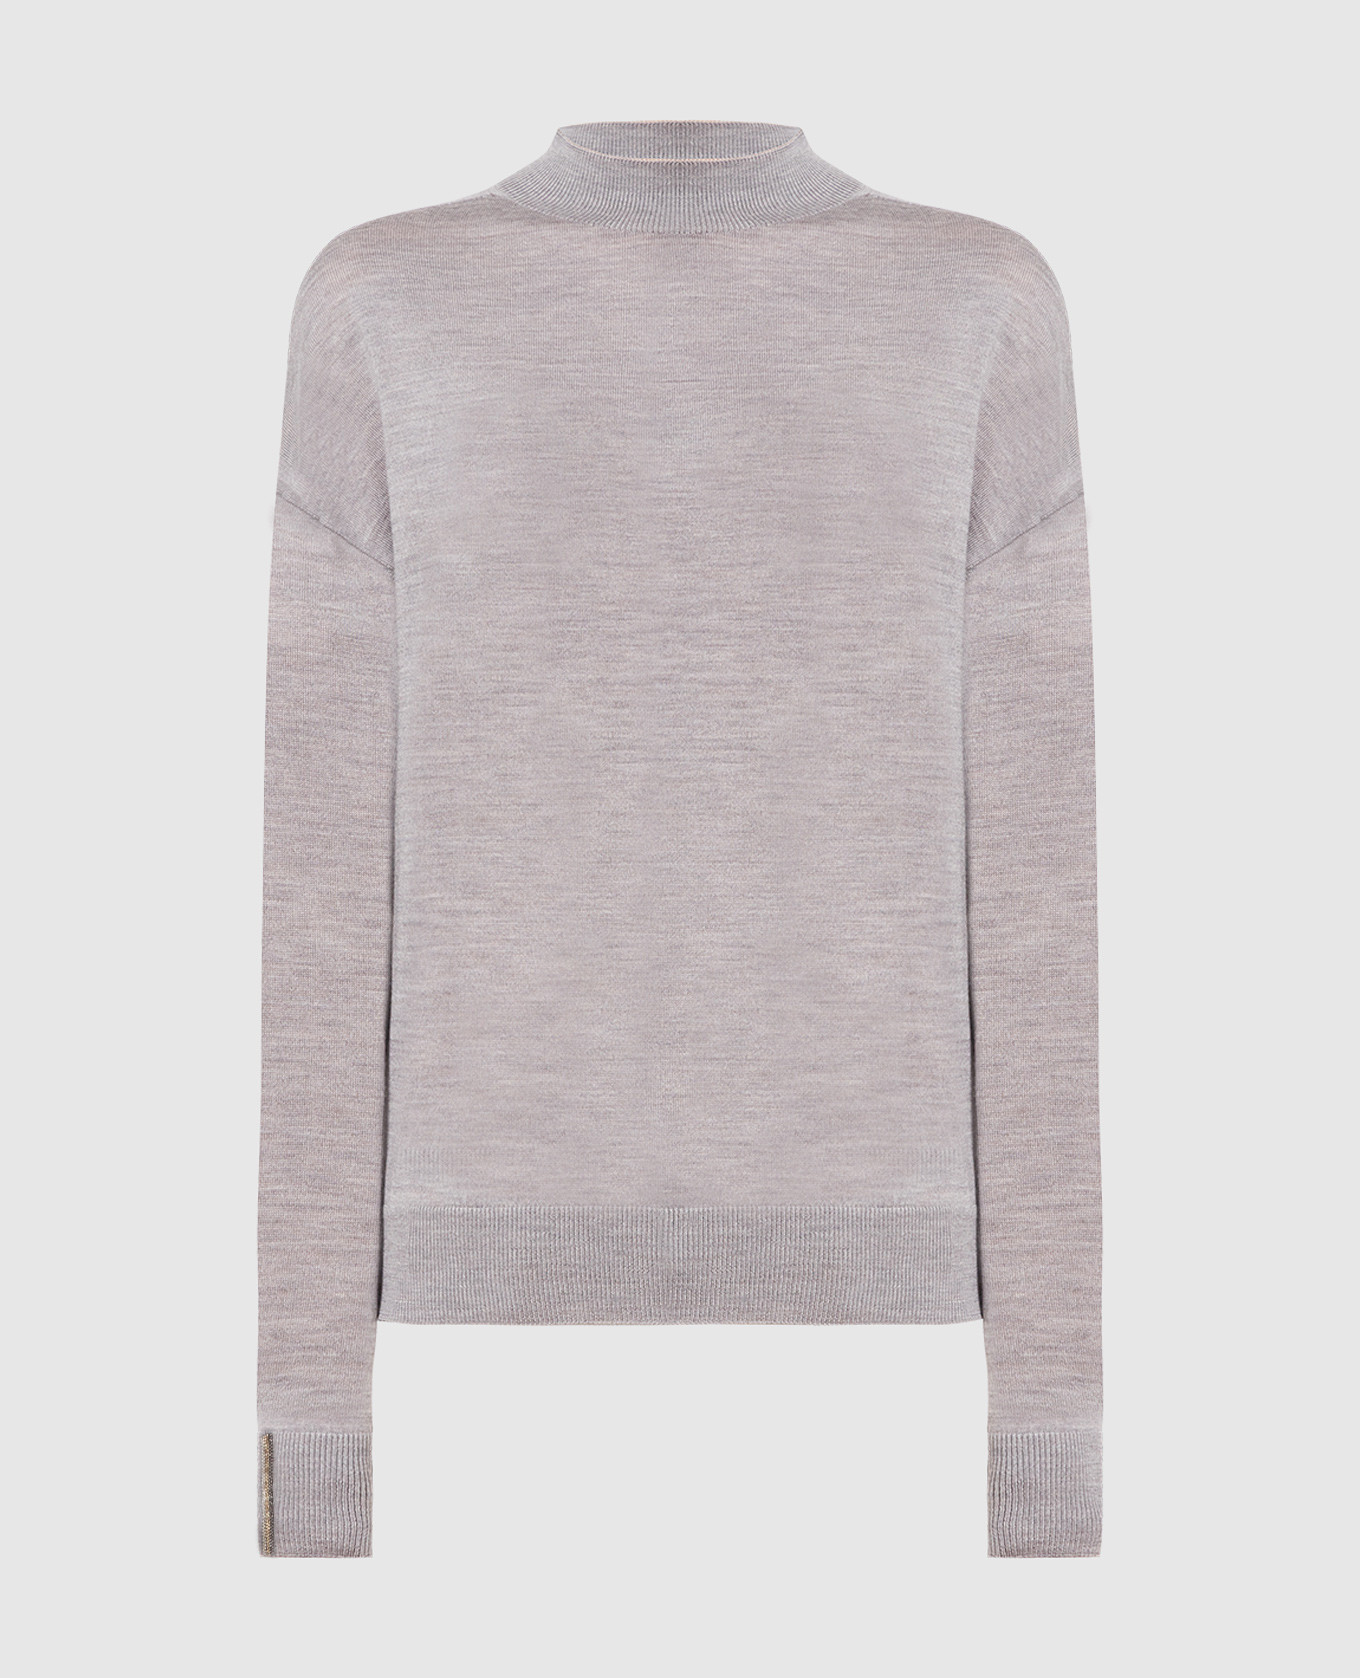 Gray woolen jumper